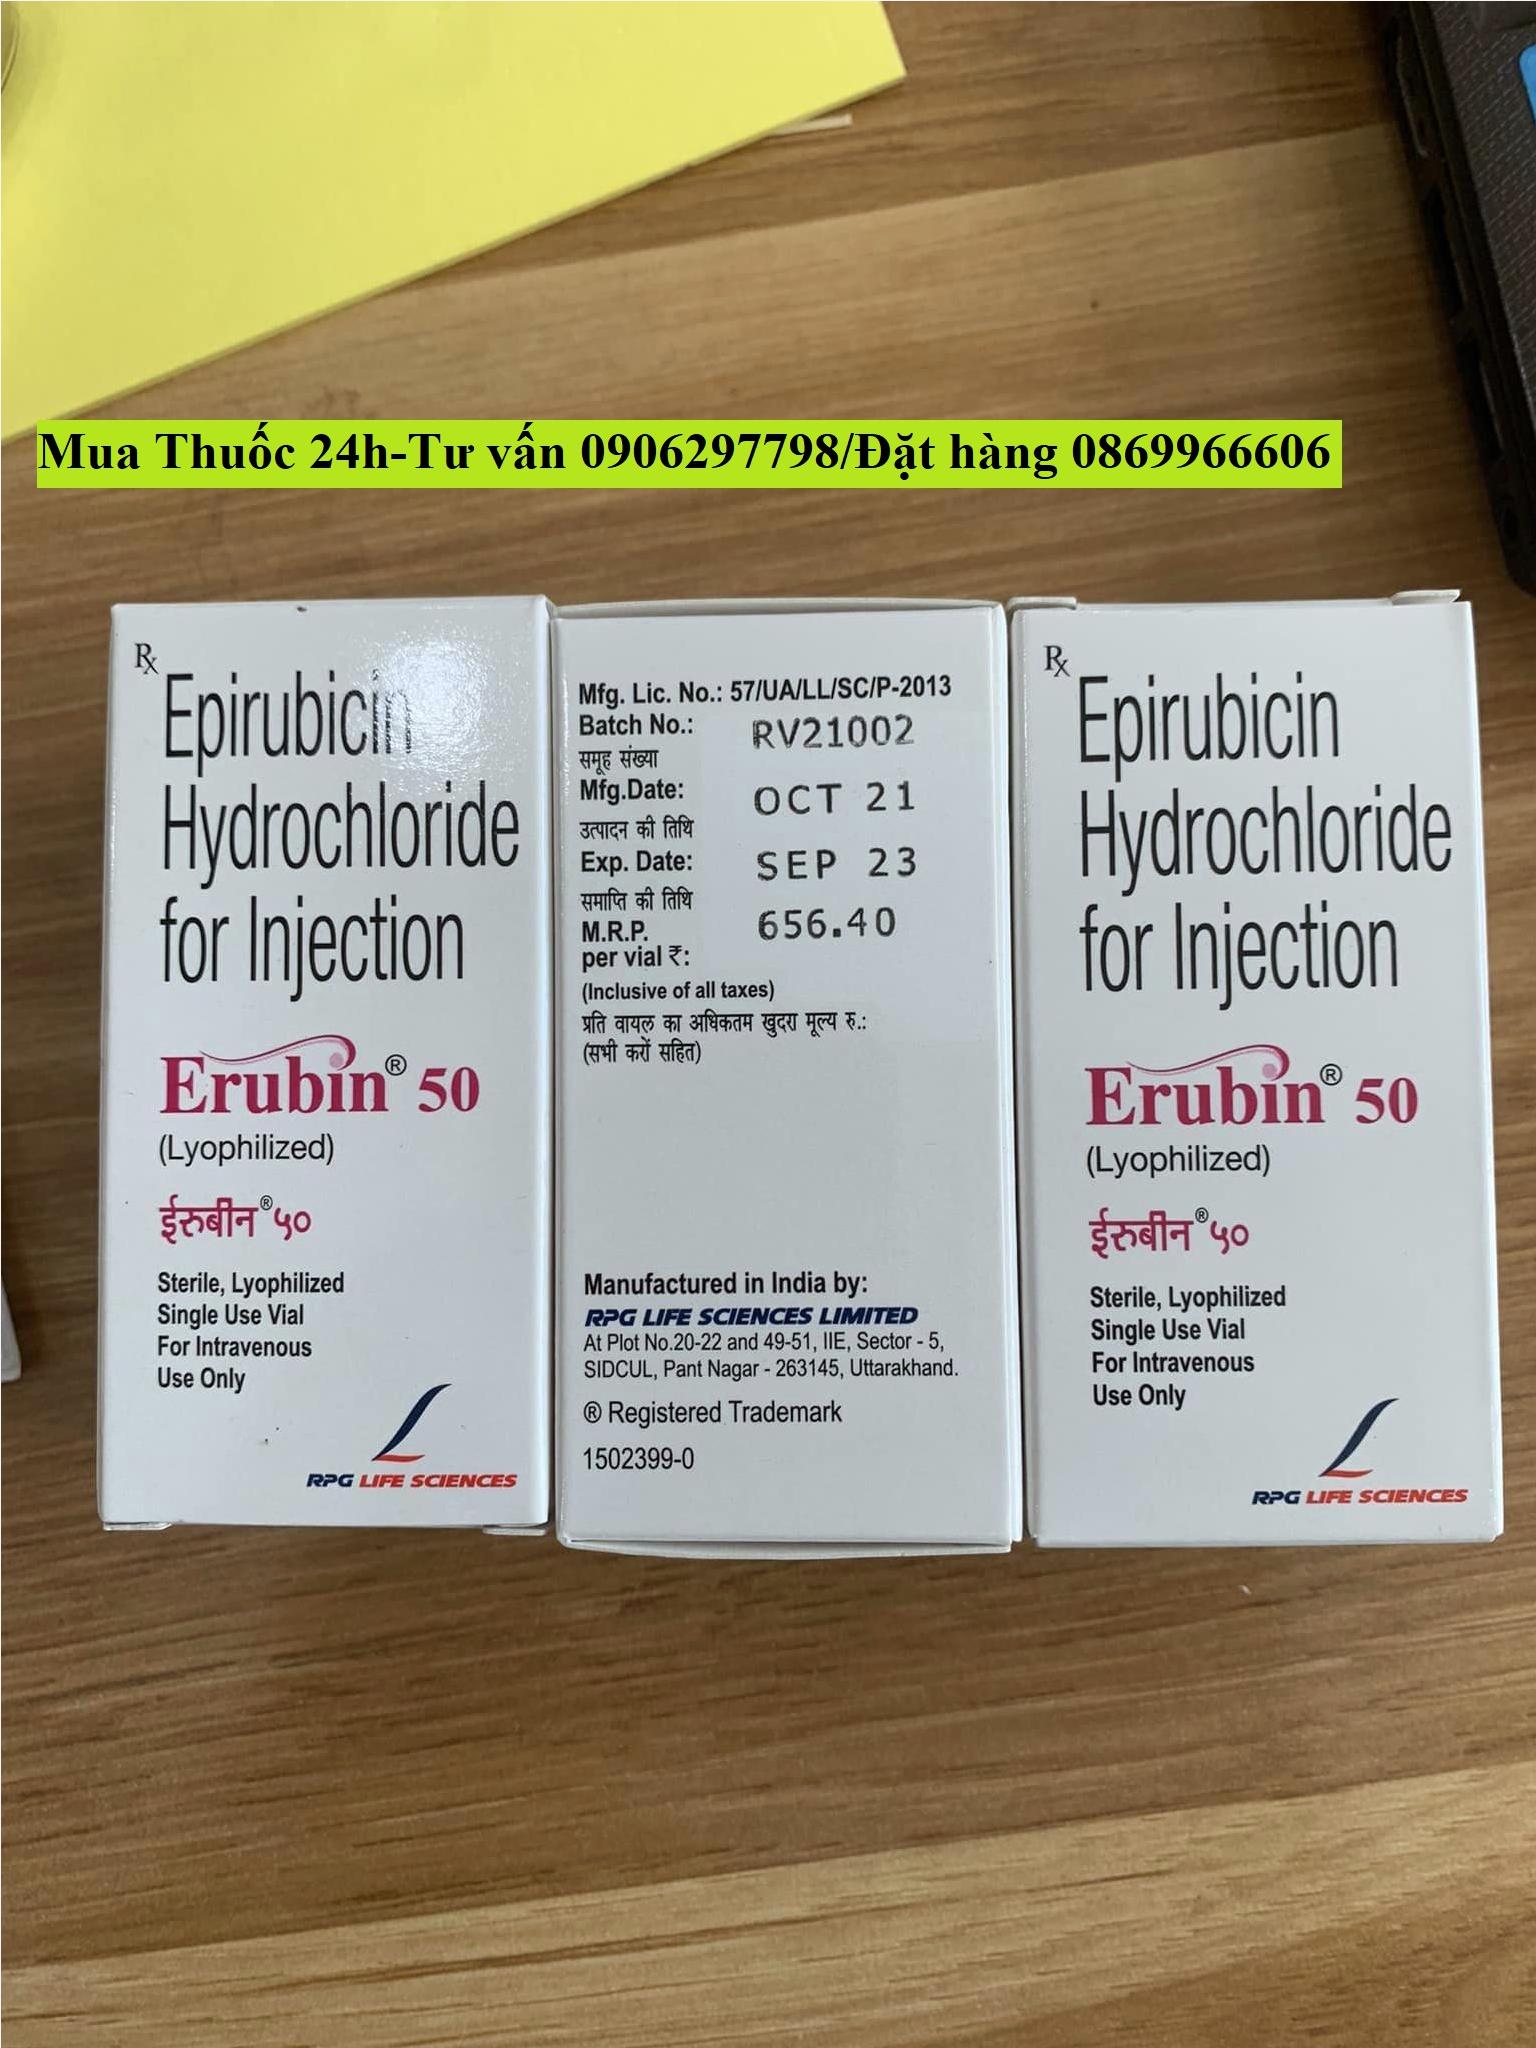 Thuốc Erubin 50 Epirubicin giá bao nhiêu mua ở đâu?